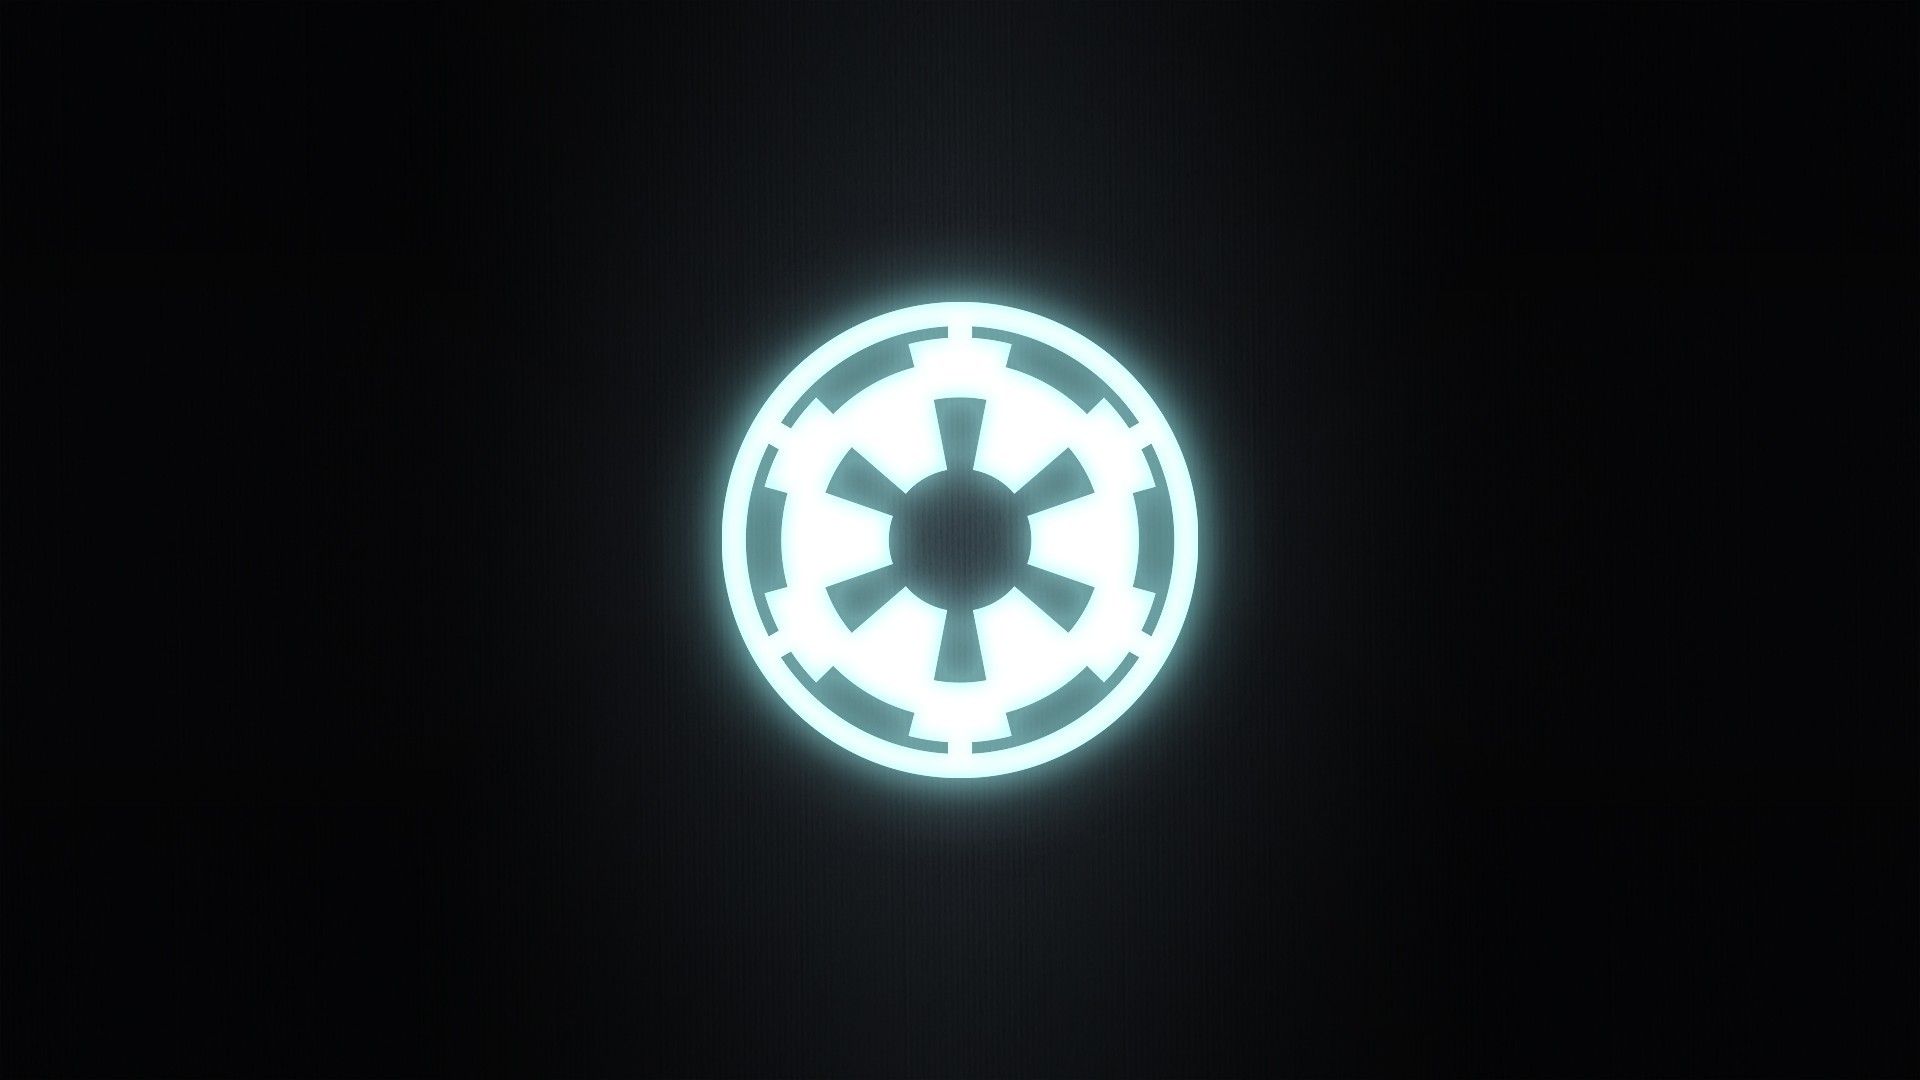 Star Wars Empire Logo